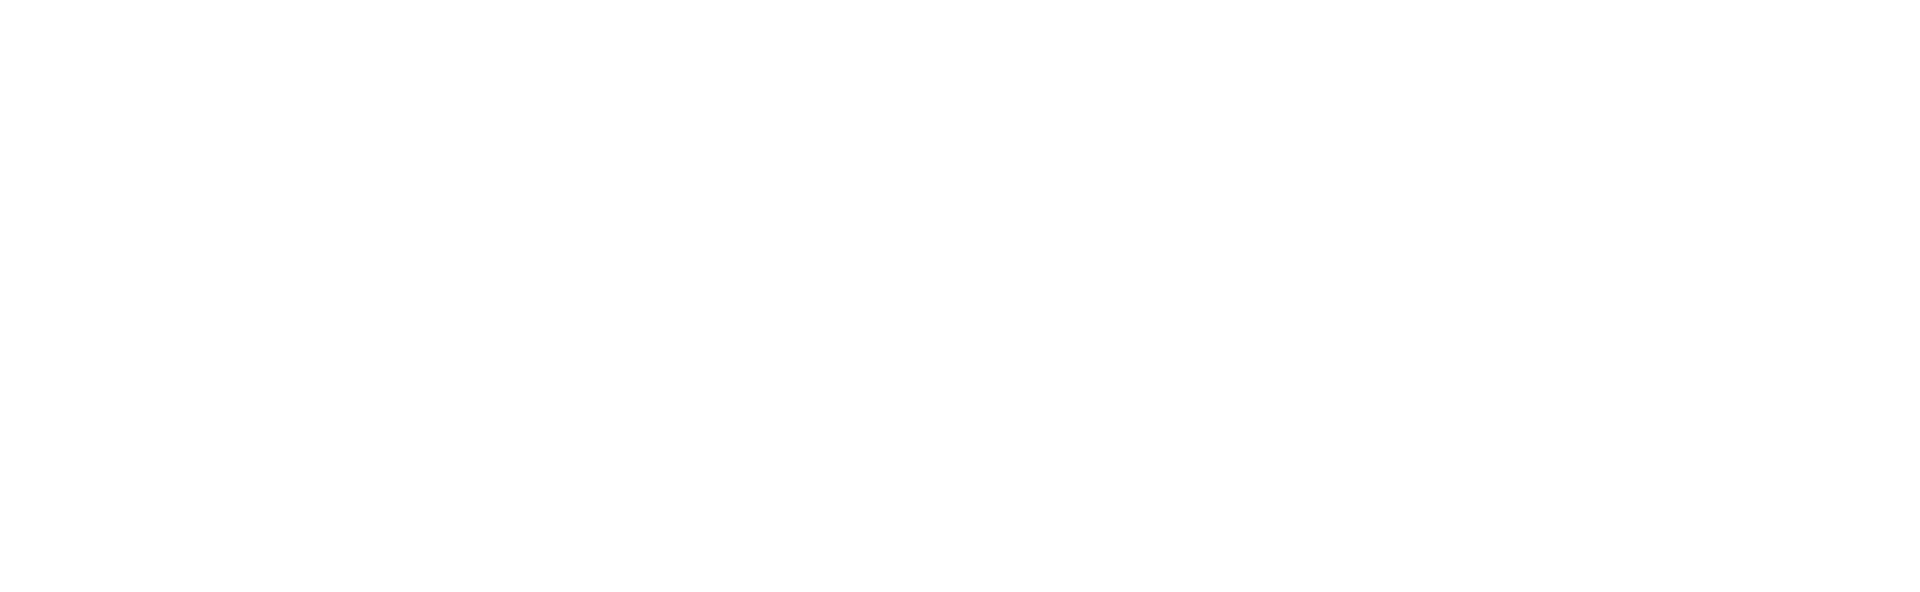 Australian Boarding Schools Association